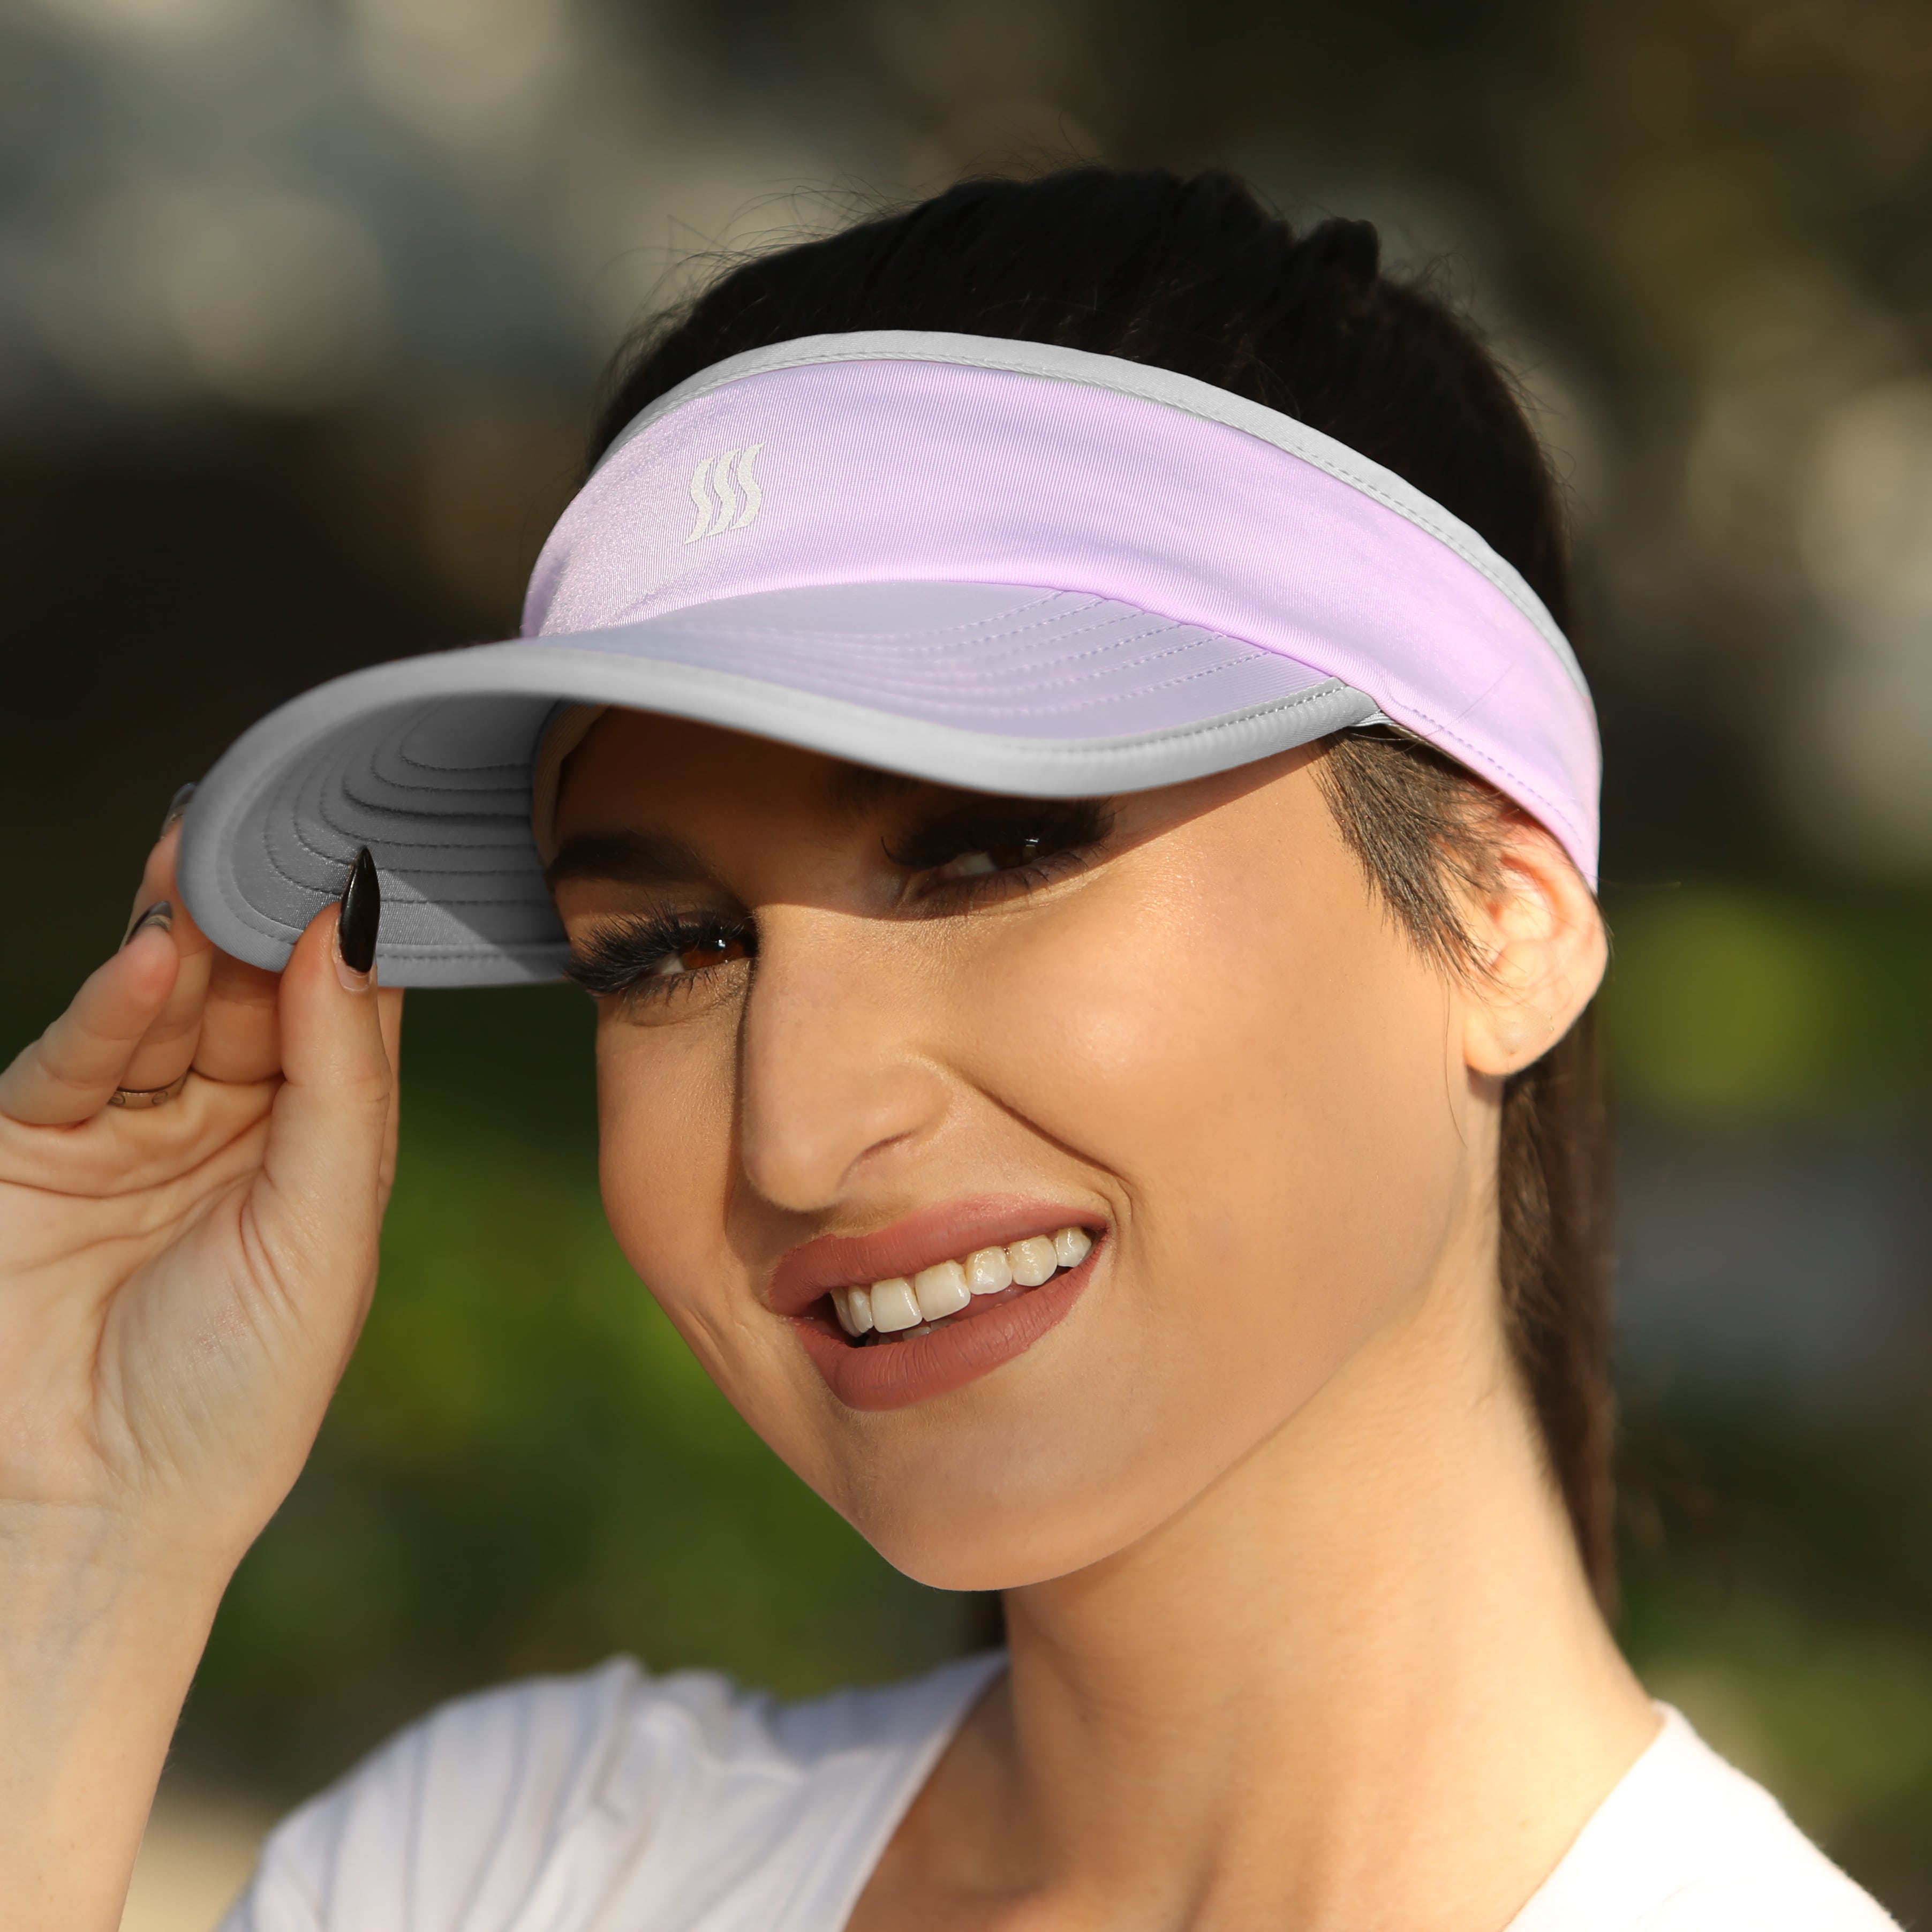 Women wearing a visor while walking.